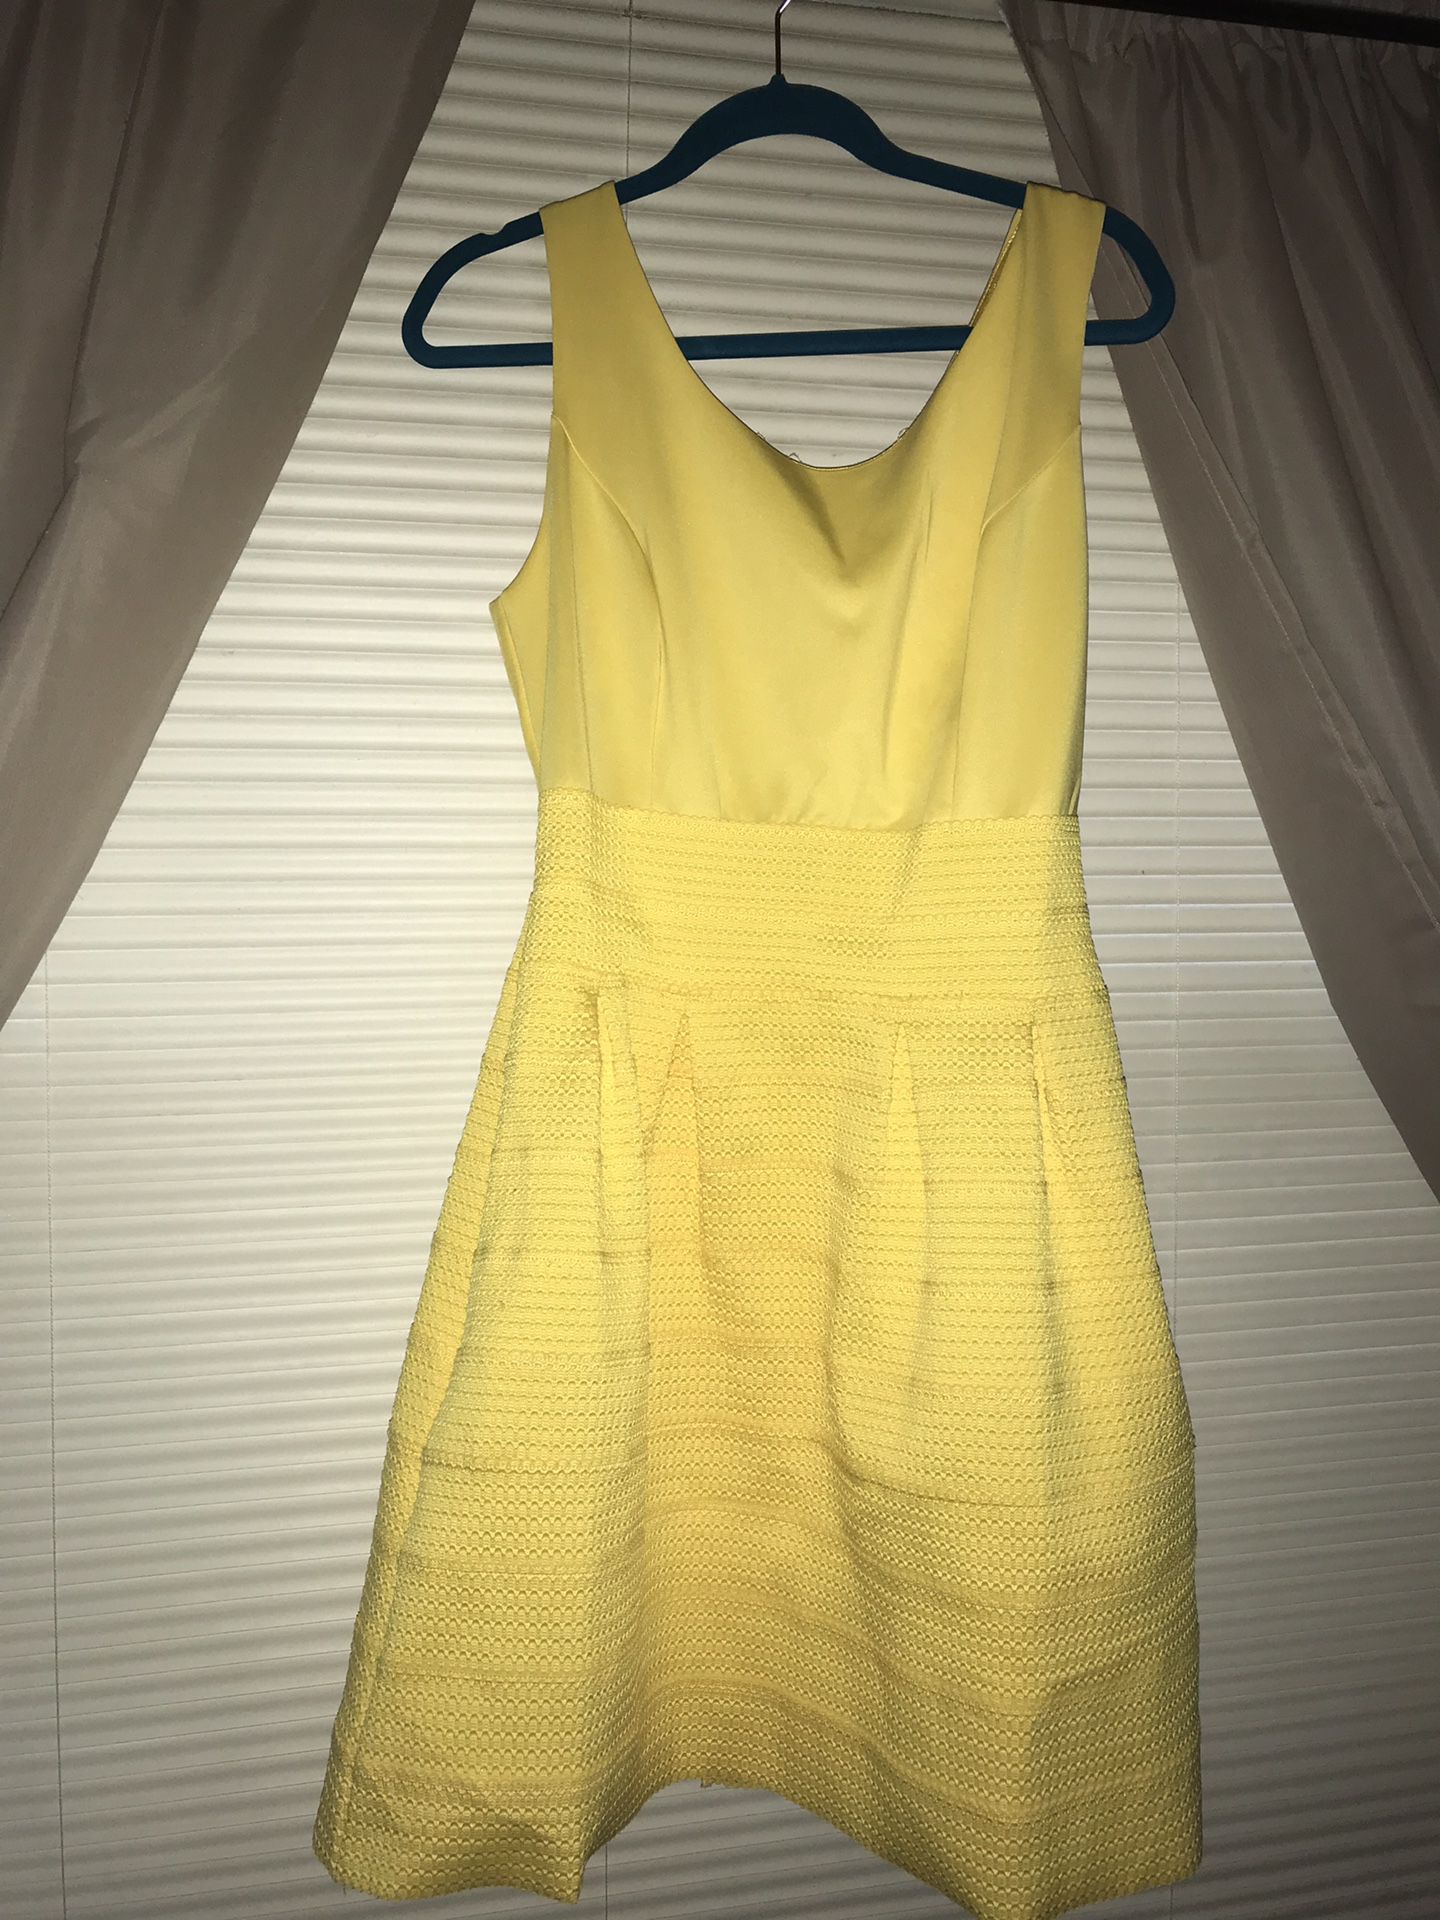 Yellow dress size L